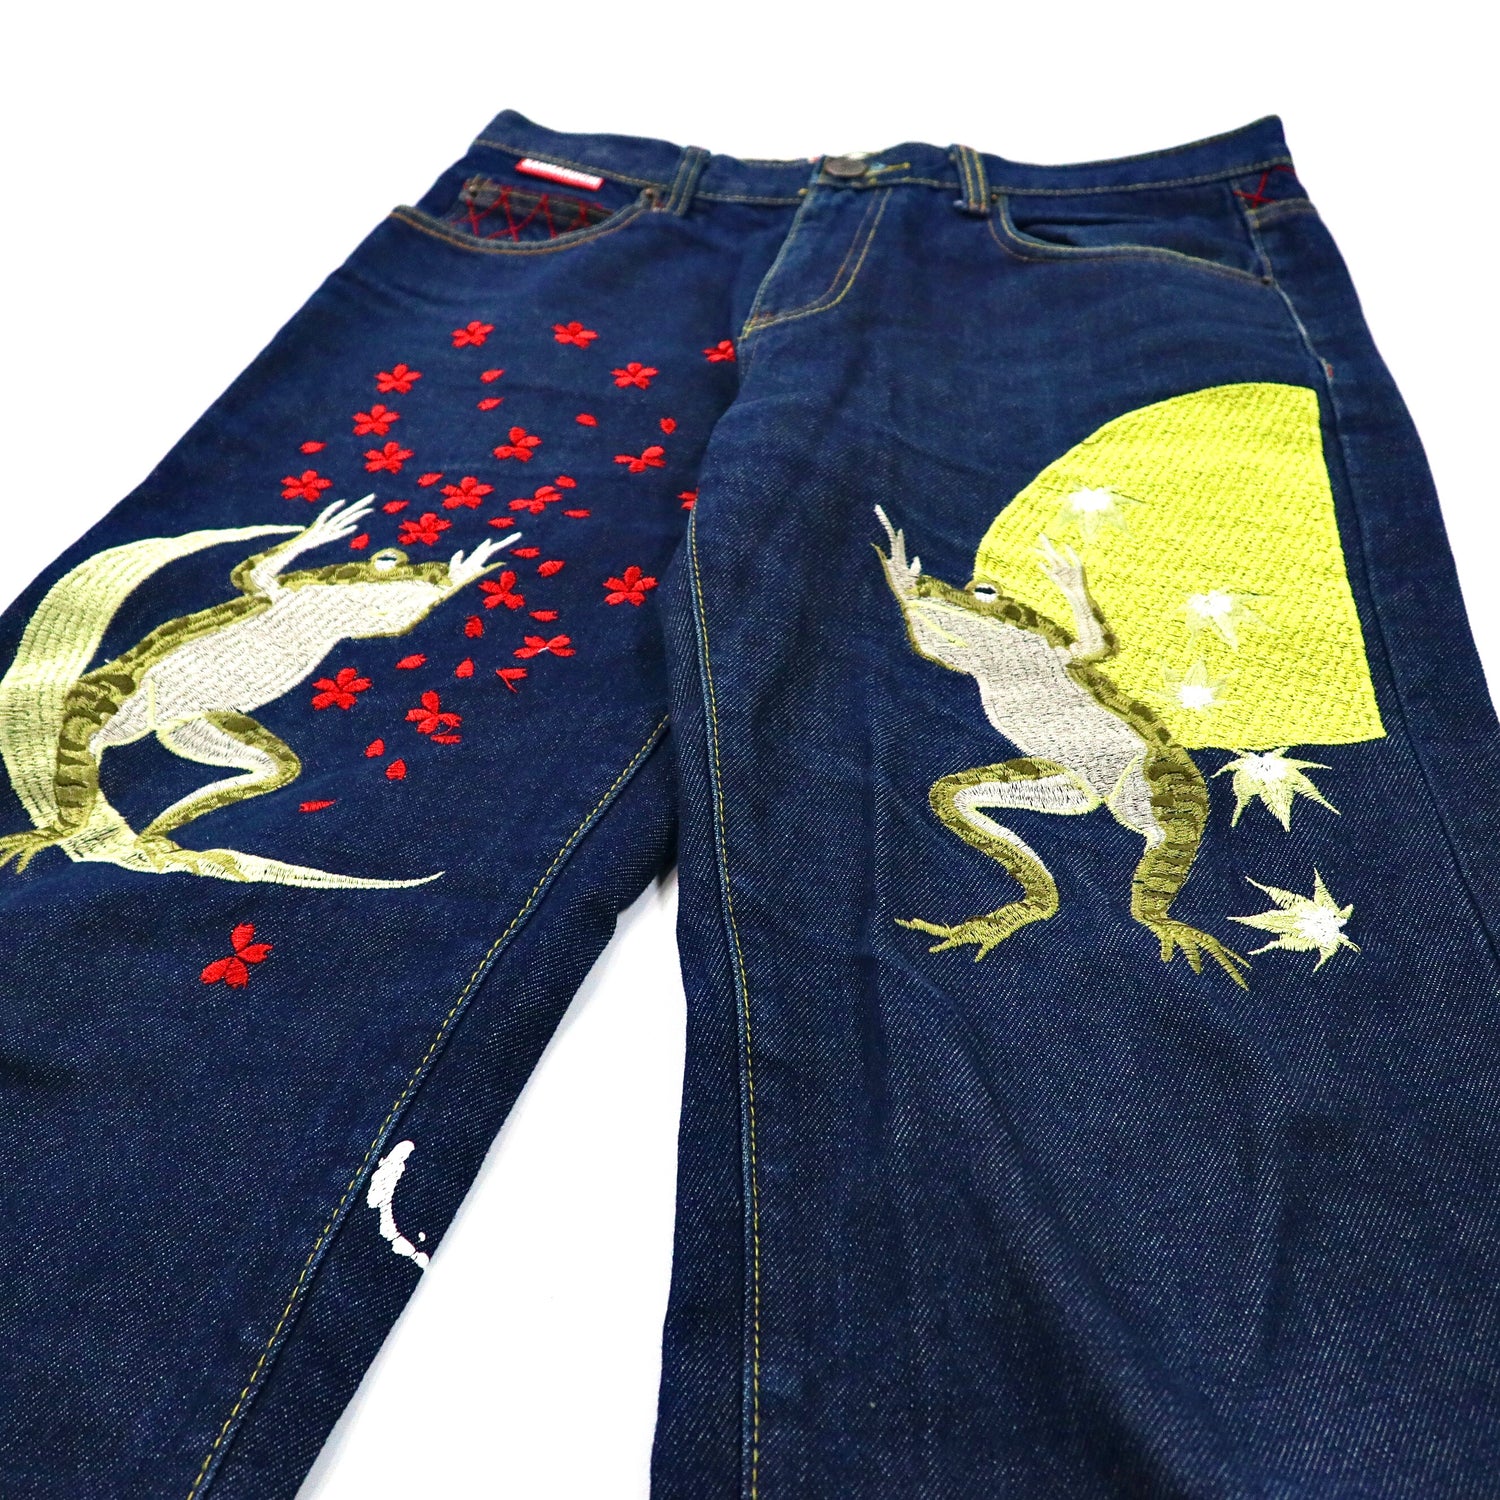 sanmaruichi　参丸一　パンツ　和柄　家紋　刺繍　サイズM